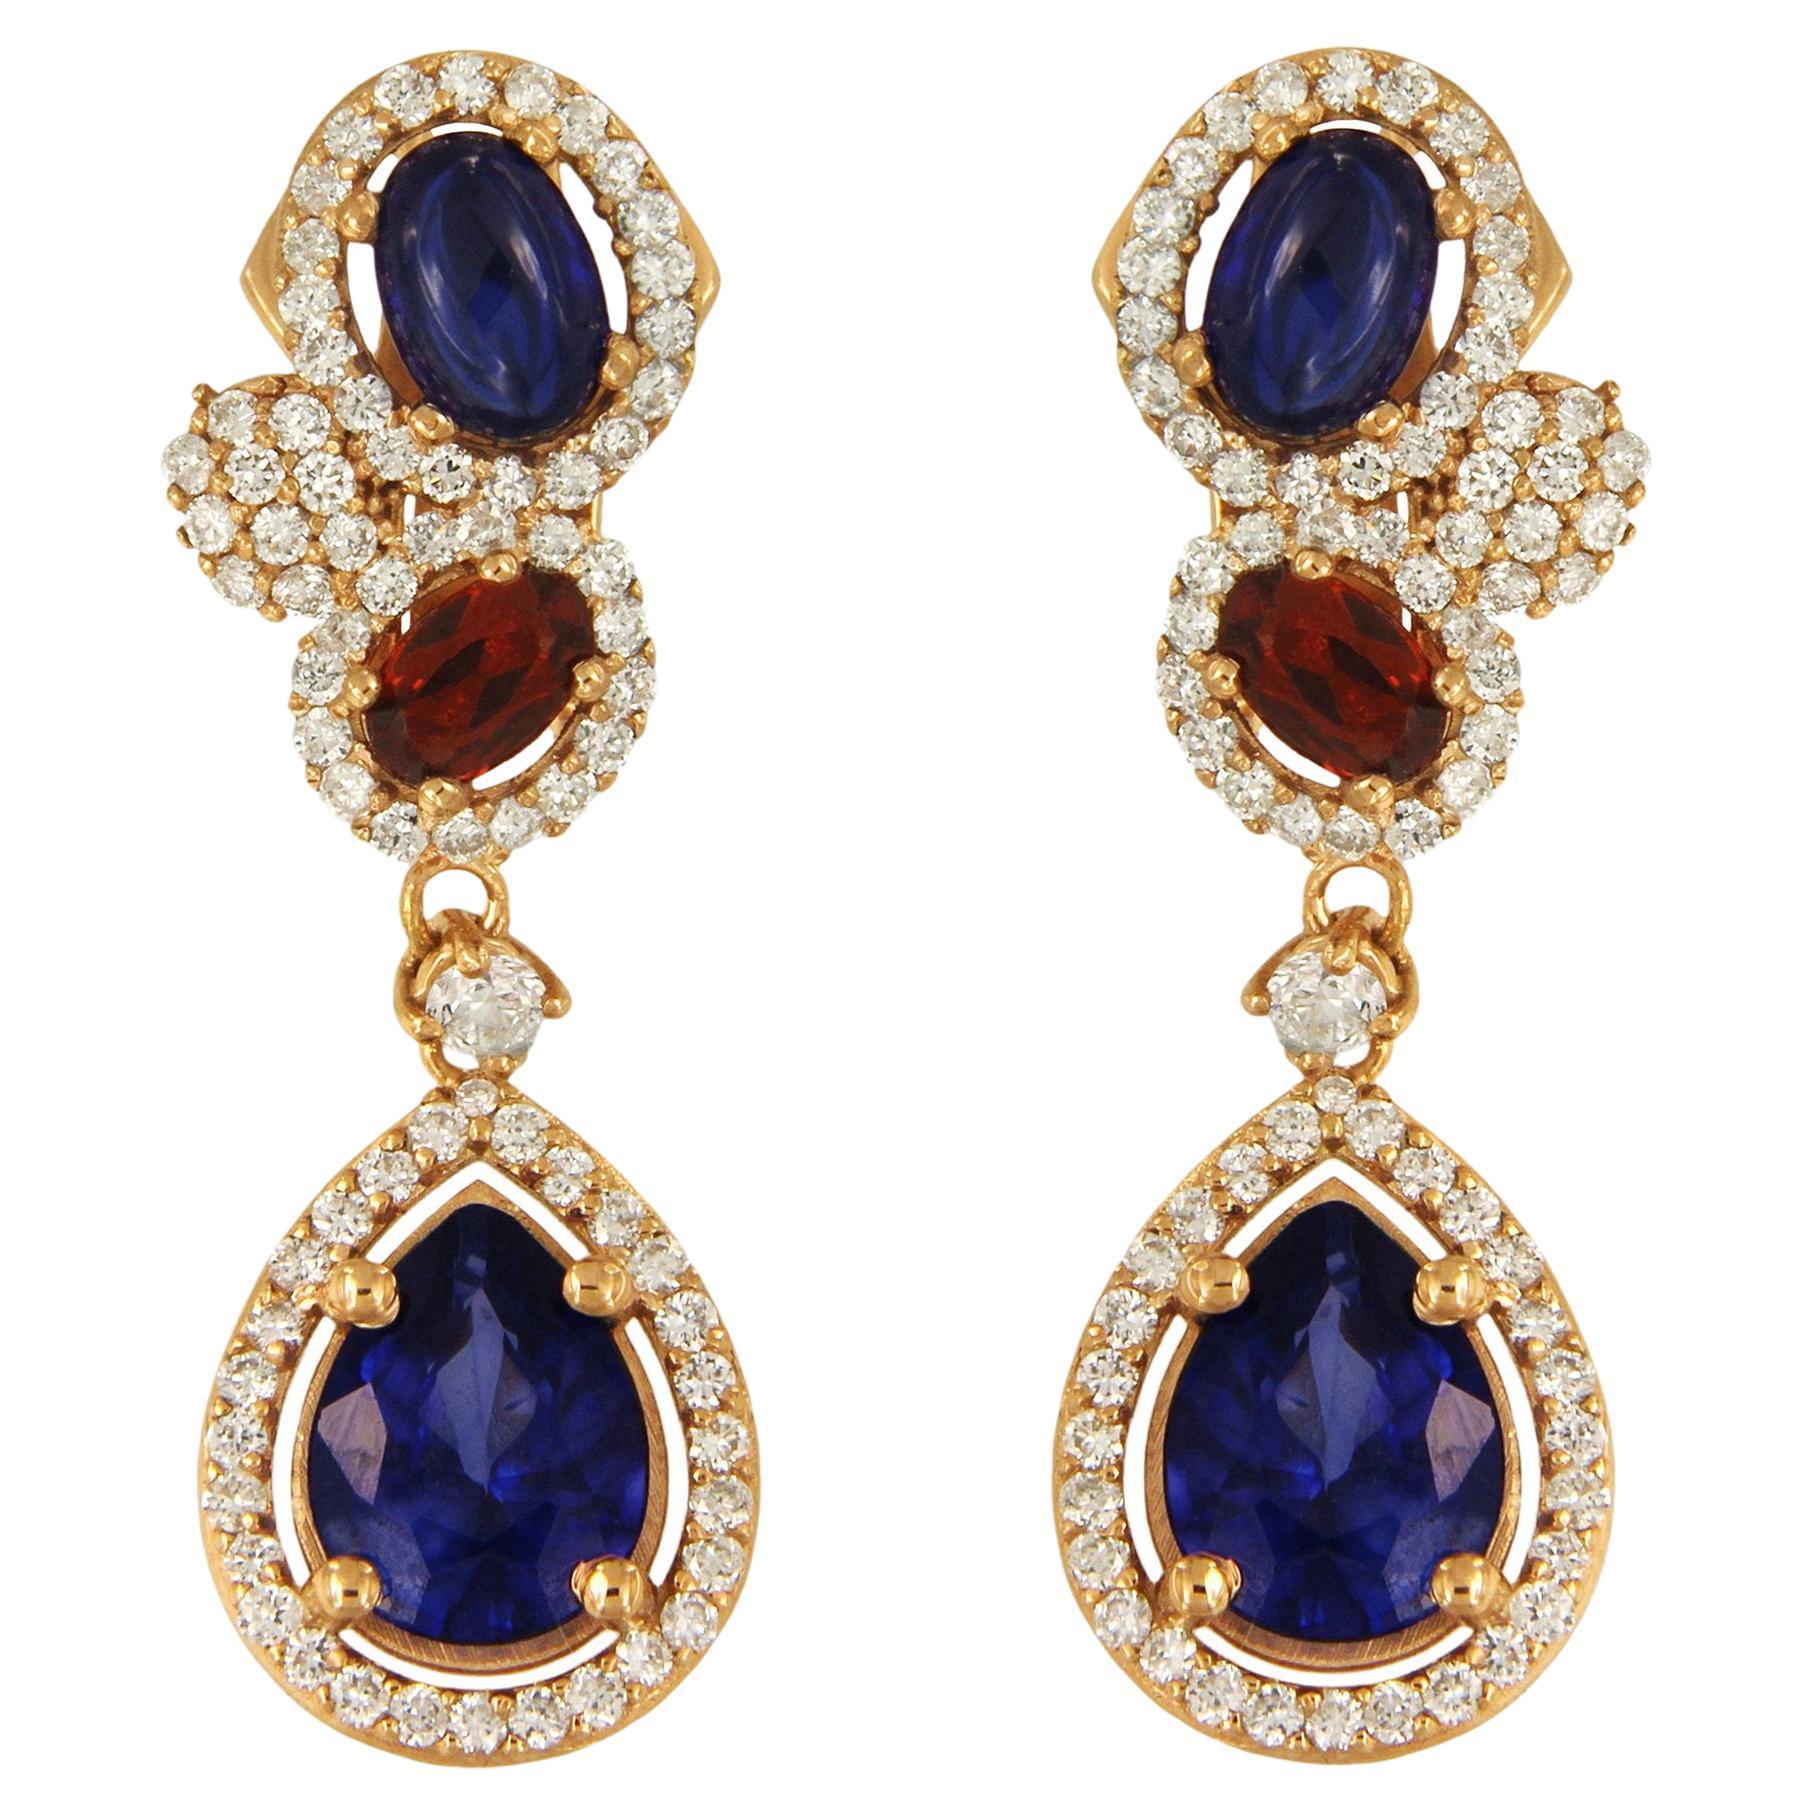 Fancy Drop Earrings with Garnet and Sapphire